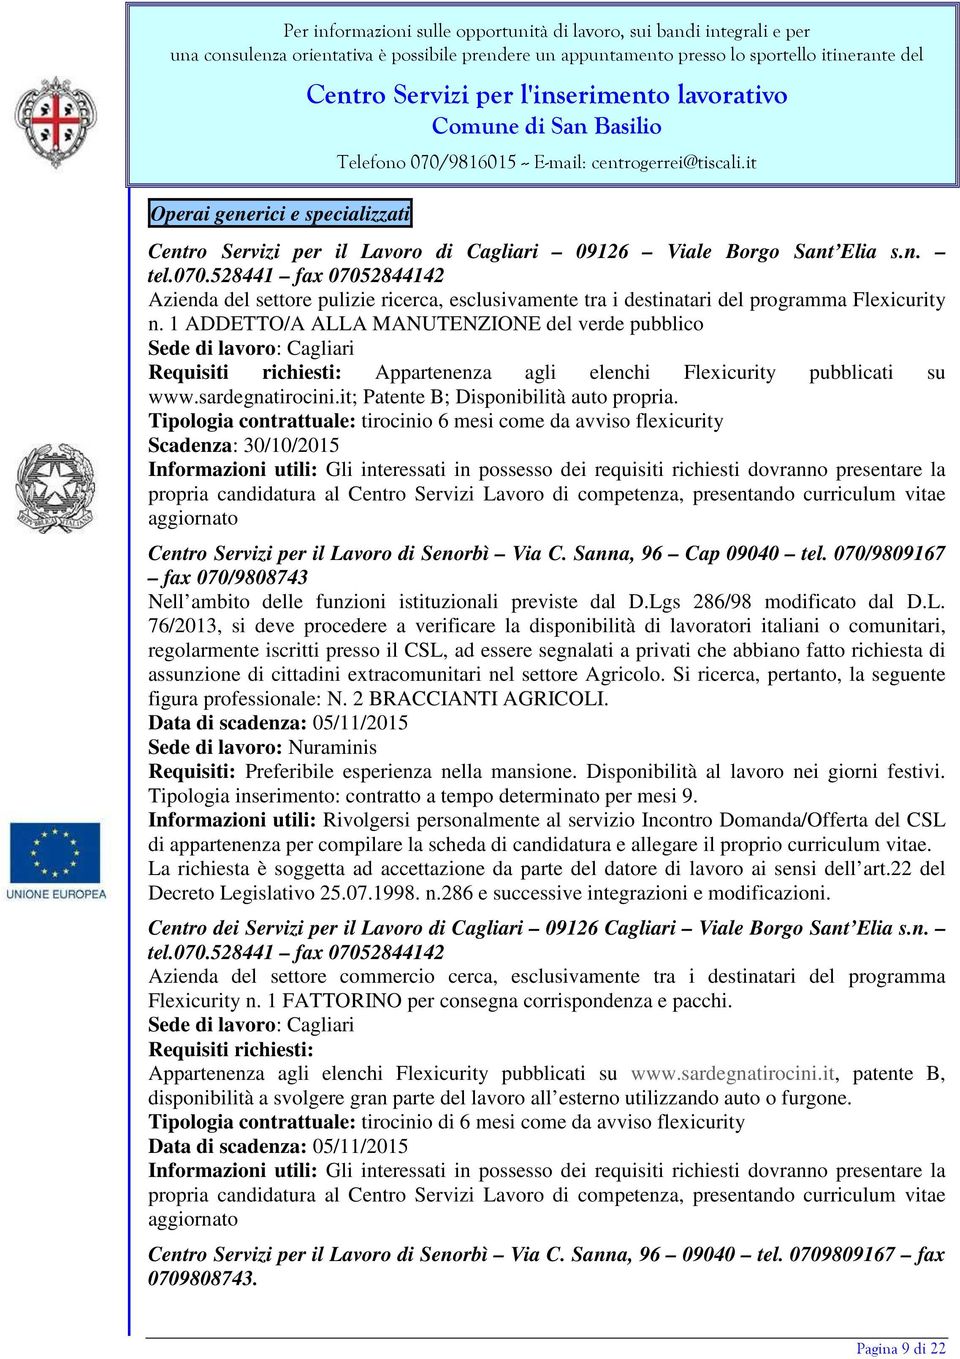 1 ADDETTO/A ALLA MANUTENZIONE del verde pubblico Sede di lavoro: Cagliari Requisiti richiesti: Appartenenza agli elenchi Flexicurity pubblicati su www.sardegnatirocini.